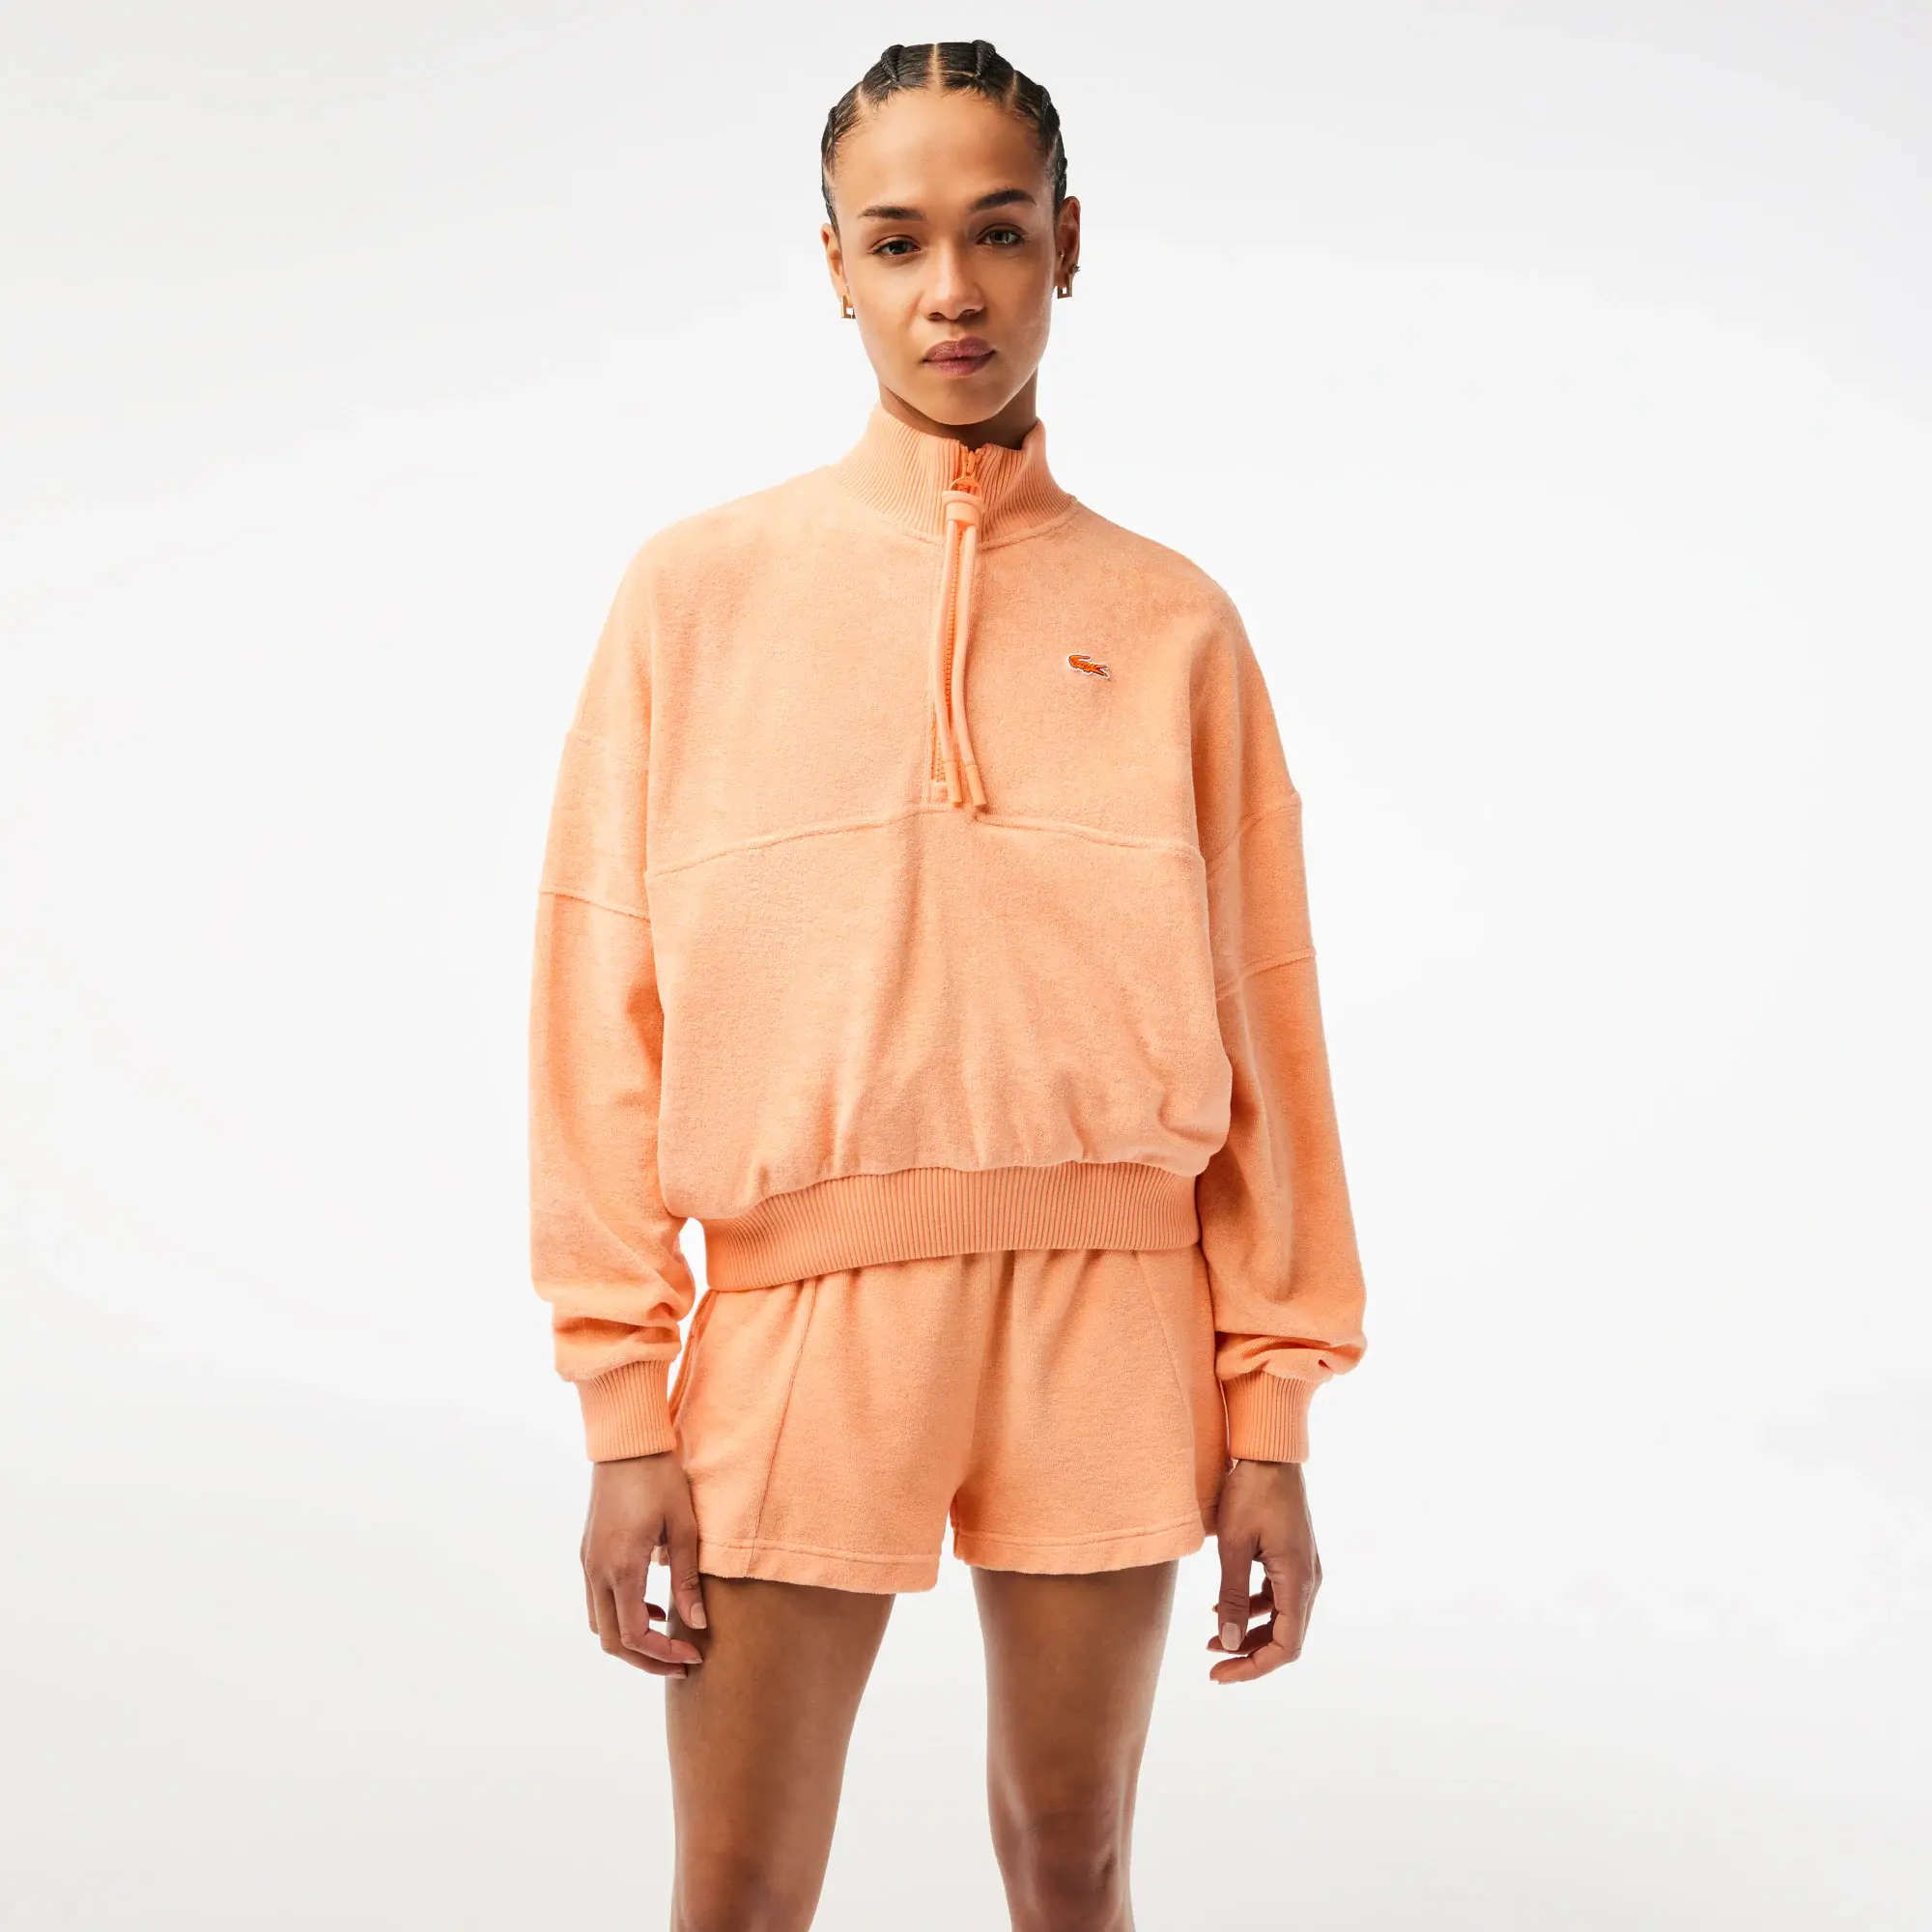 Lacoste Women’s High-Neck Terry Cloth Half Zip Sweatshirt. 1